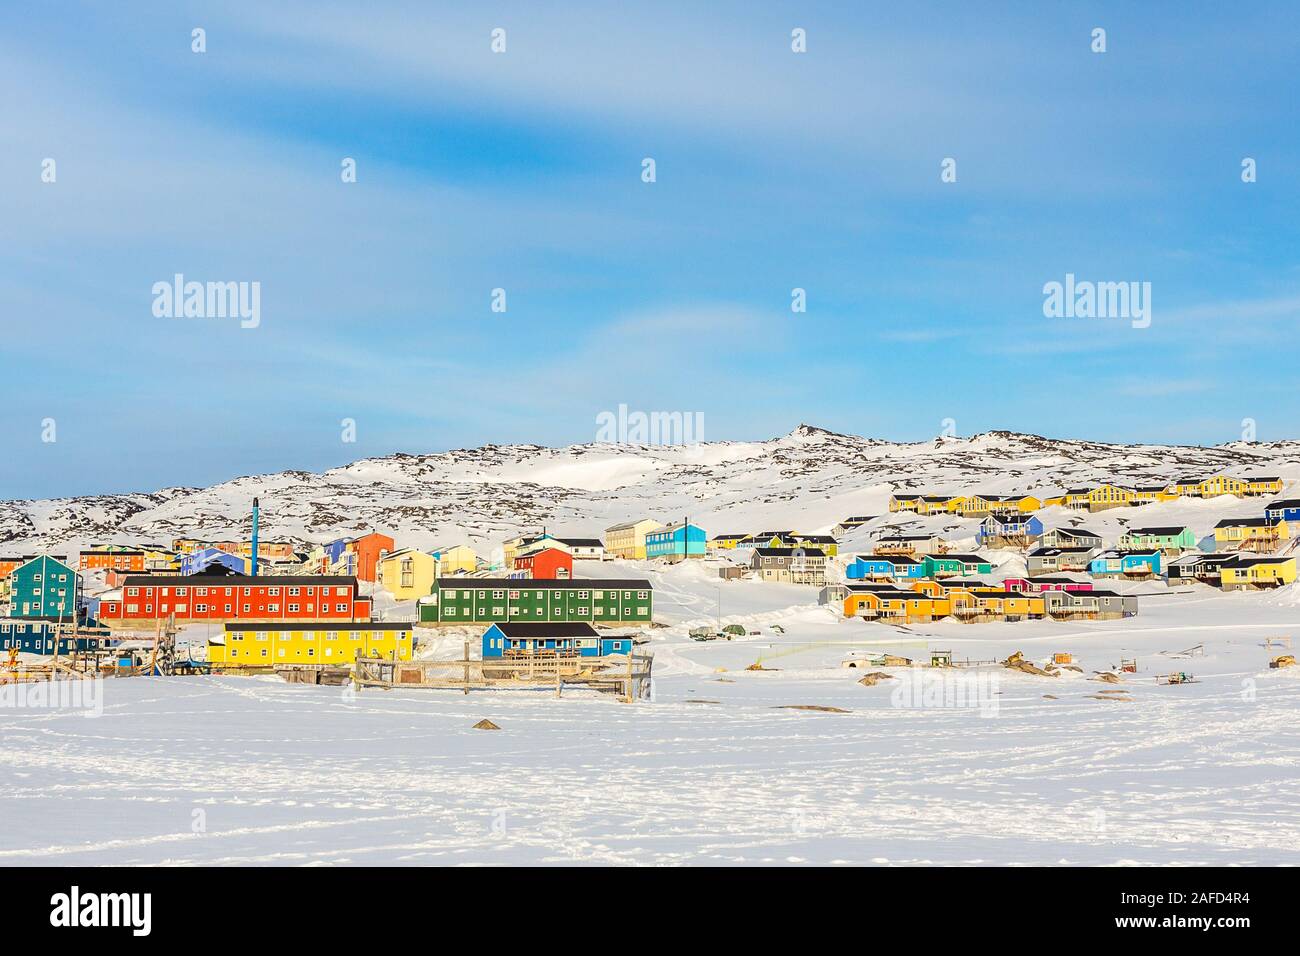 Artico centro città con coloratissime case Inuit sulle colline rocciose coperte di neve, Ilulissat, Avannaata comune, Groenlandia Foto Stock